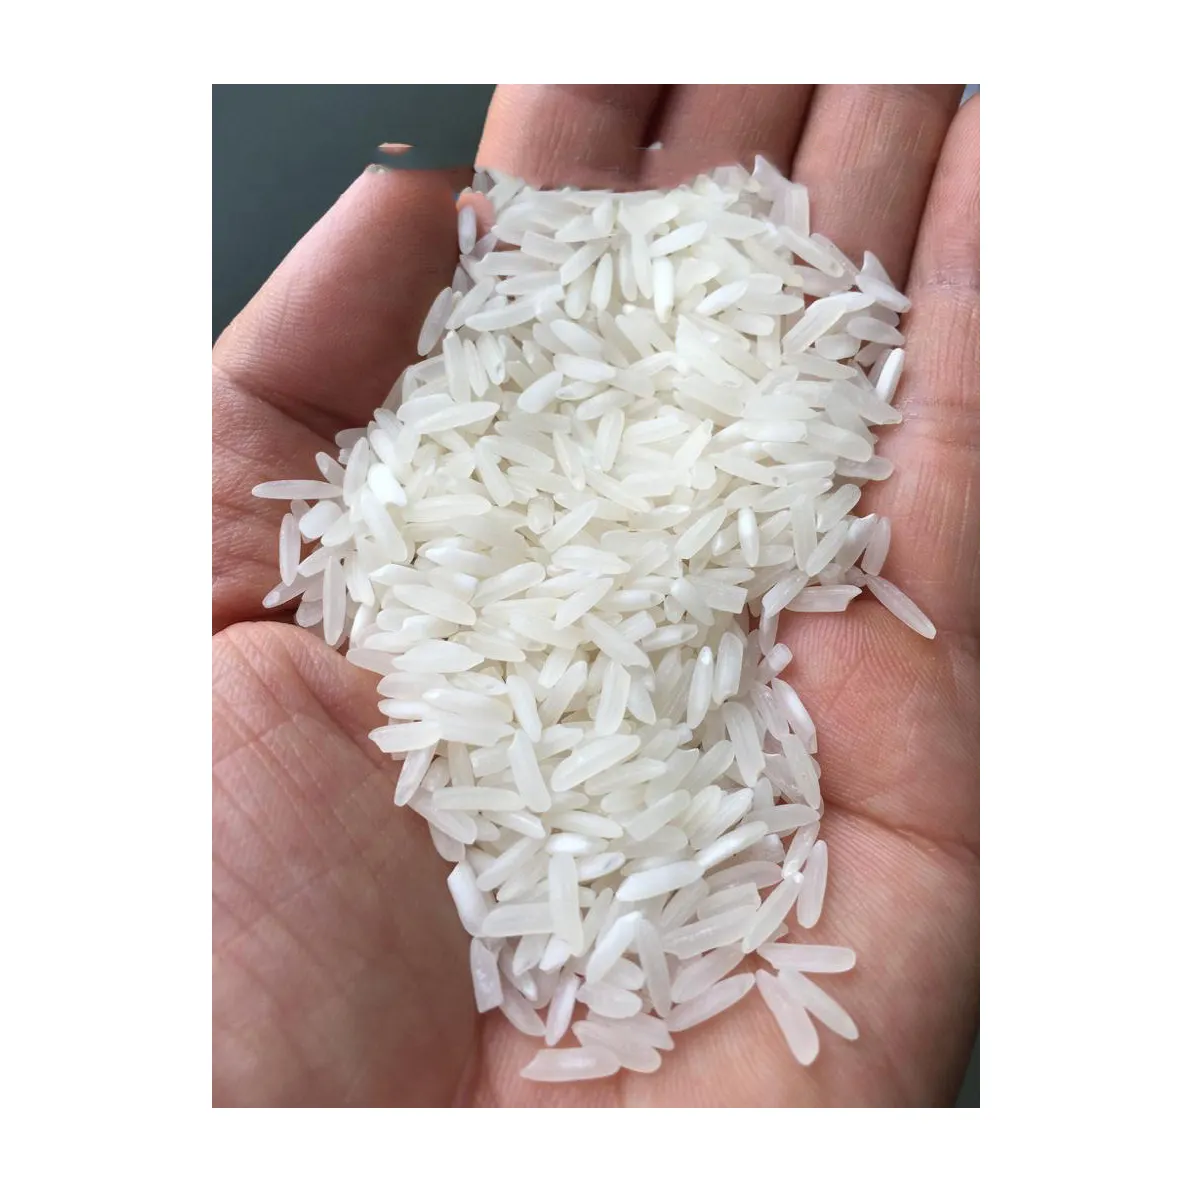 أرز محمود طويل الحبوب، أرز البيرياني رخيص الثمن أرز سونوارا موردي الأرز طويل الحبوب متوسط الحبوب بني